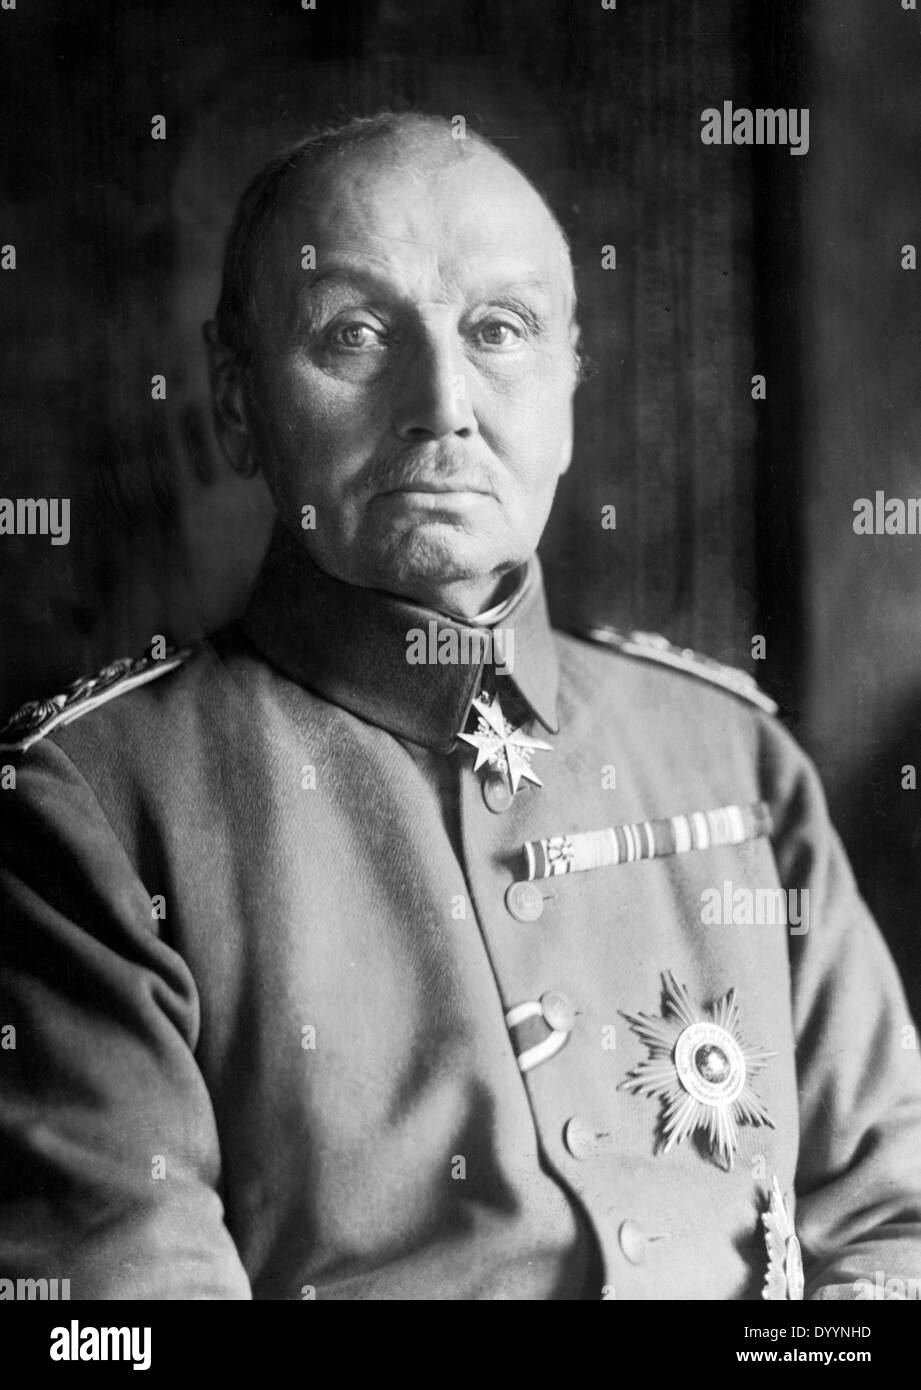 Supreme General von Kluck Stock Photo